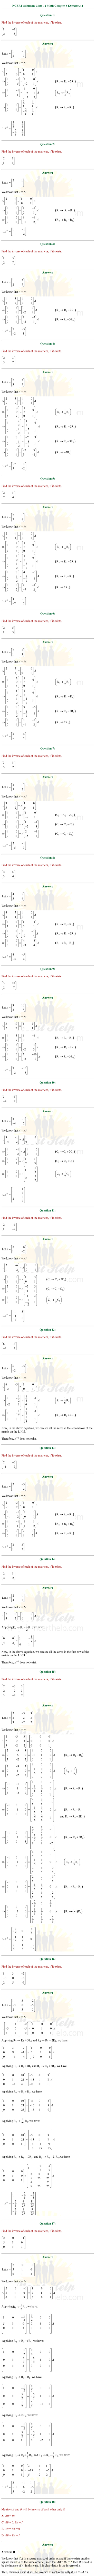 ex.3.4 Class 12 Math Chapter 3 ncert solutions